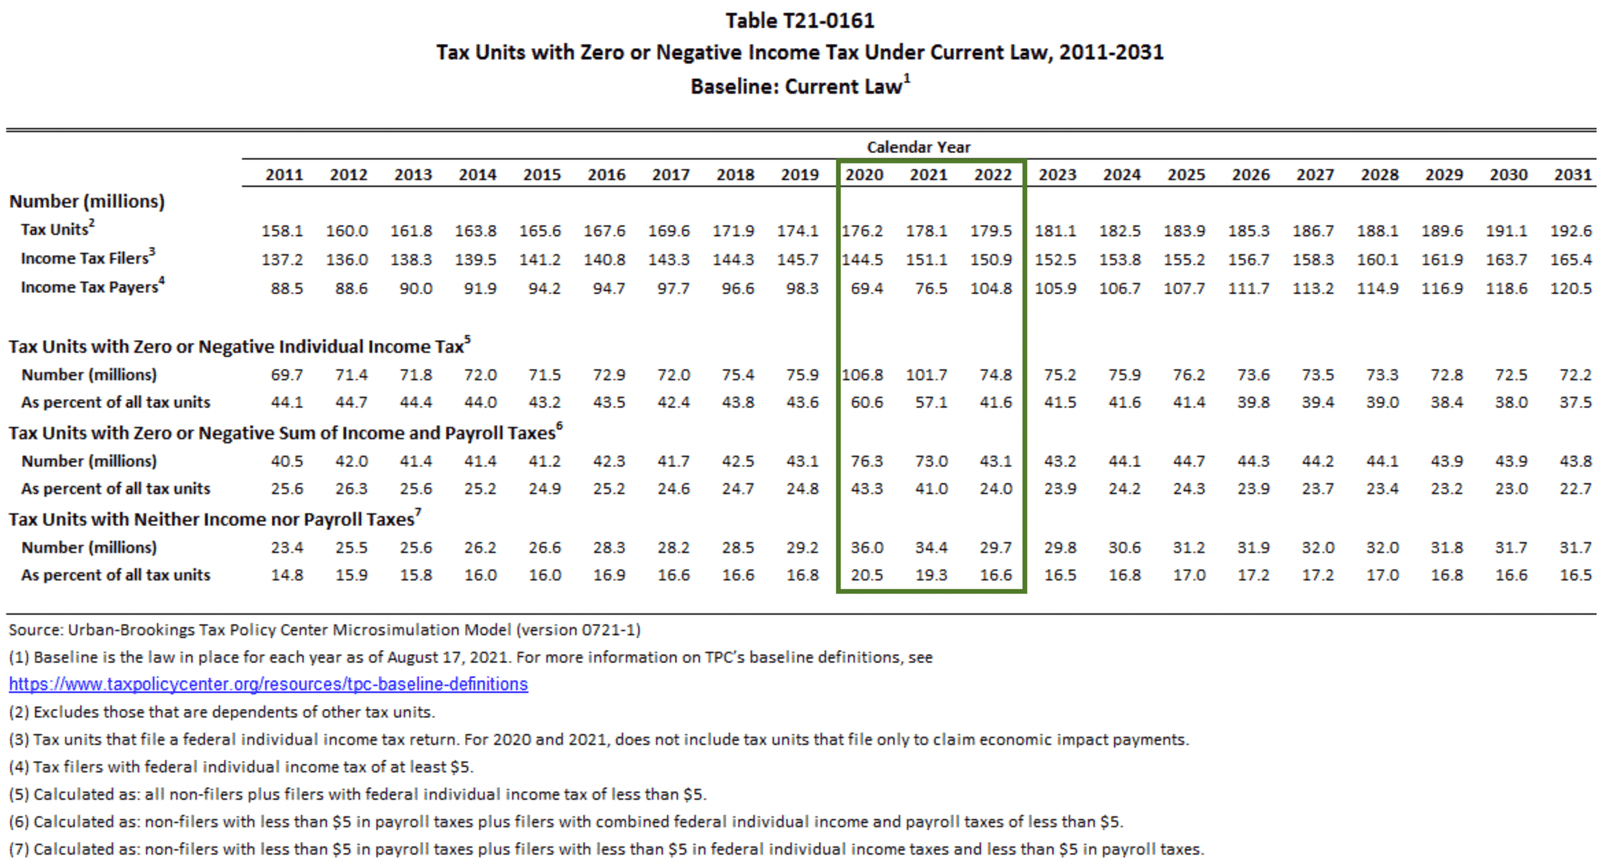 Le nombre et le pourcentage d'Américains qui ne paient pas d'impôt fédéral sur le revenu en 2020, 2021 et 2022